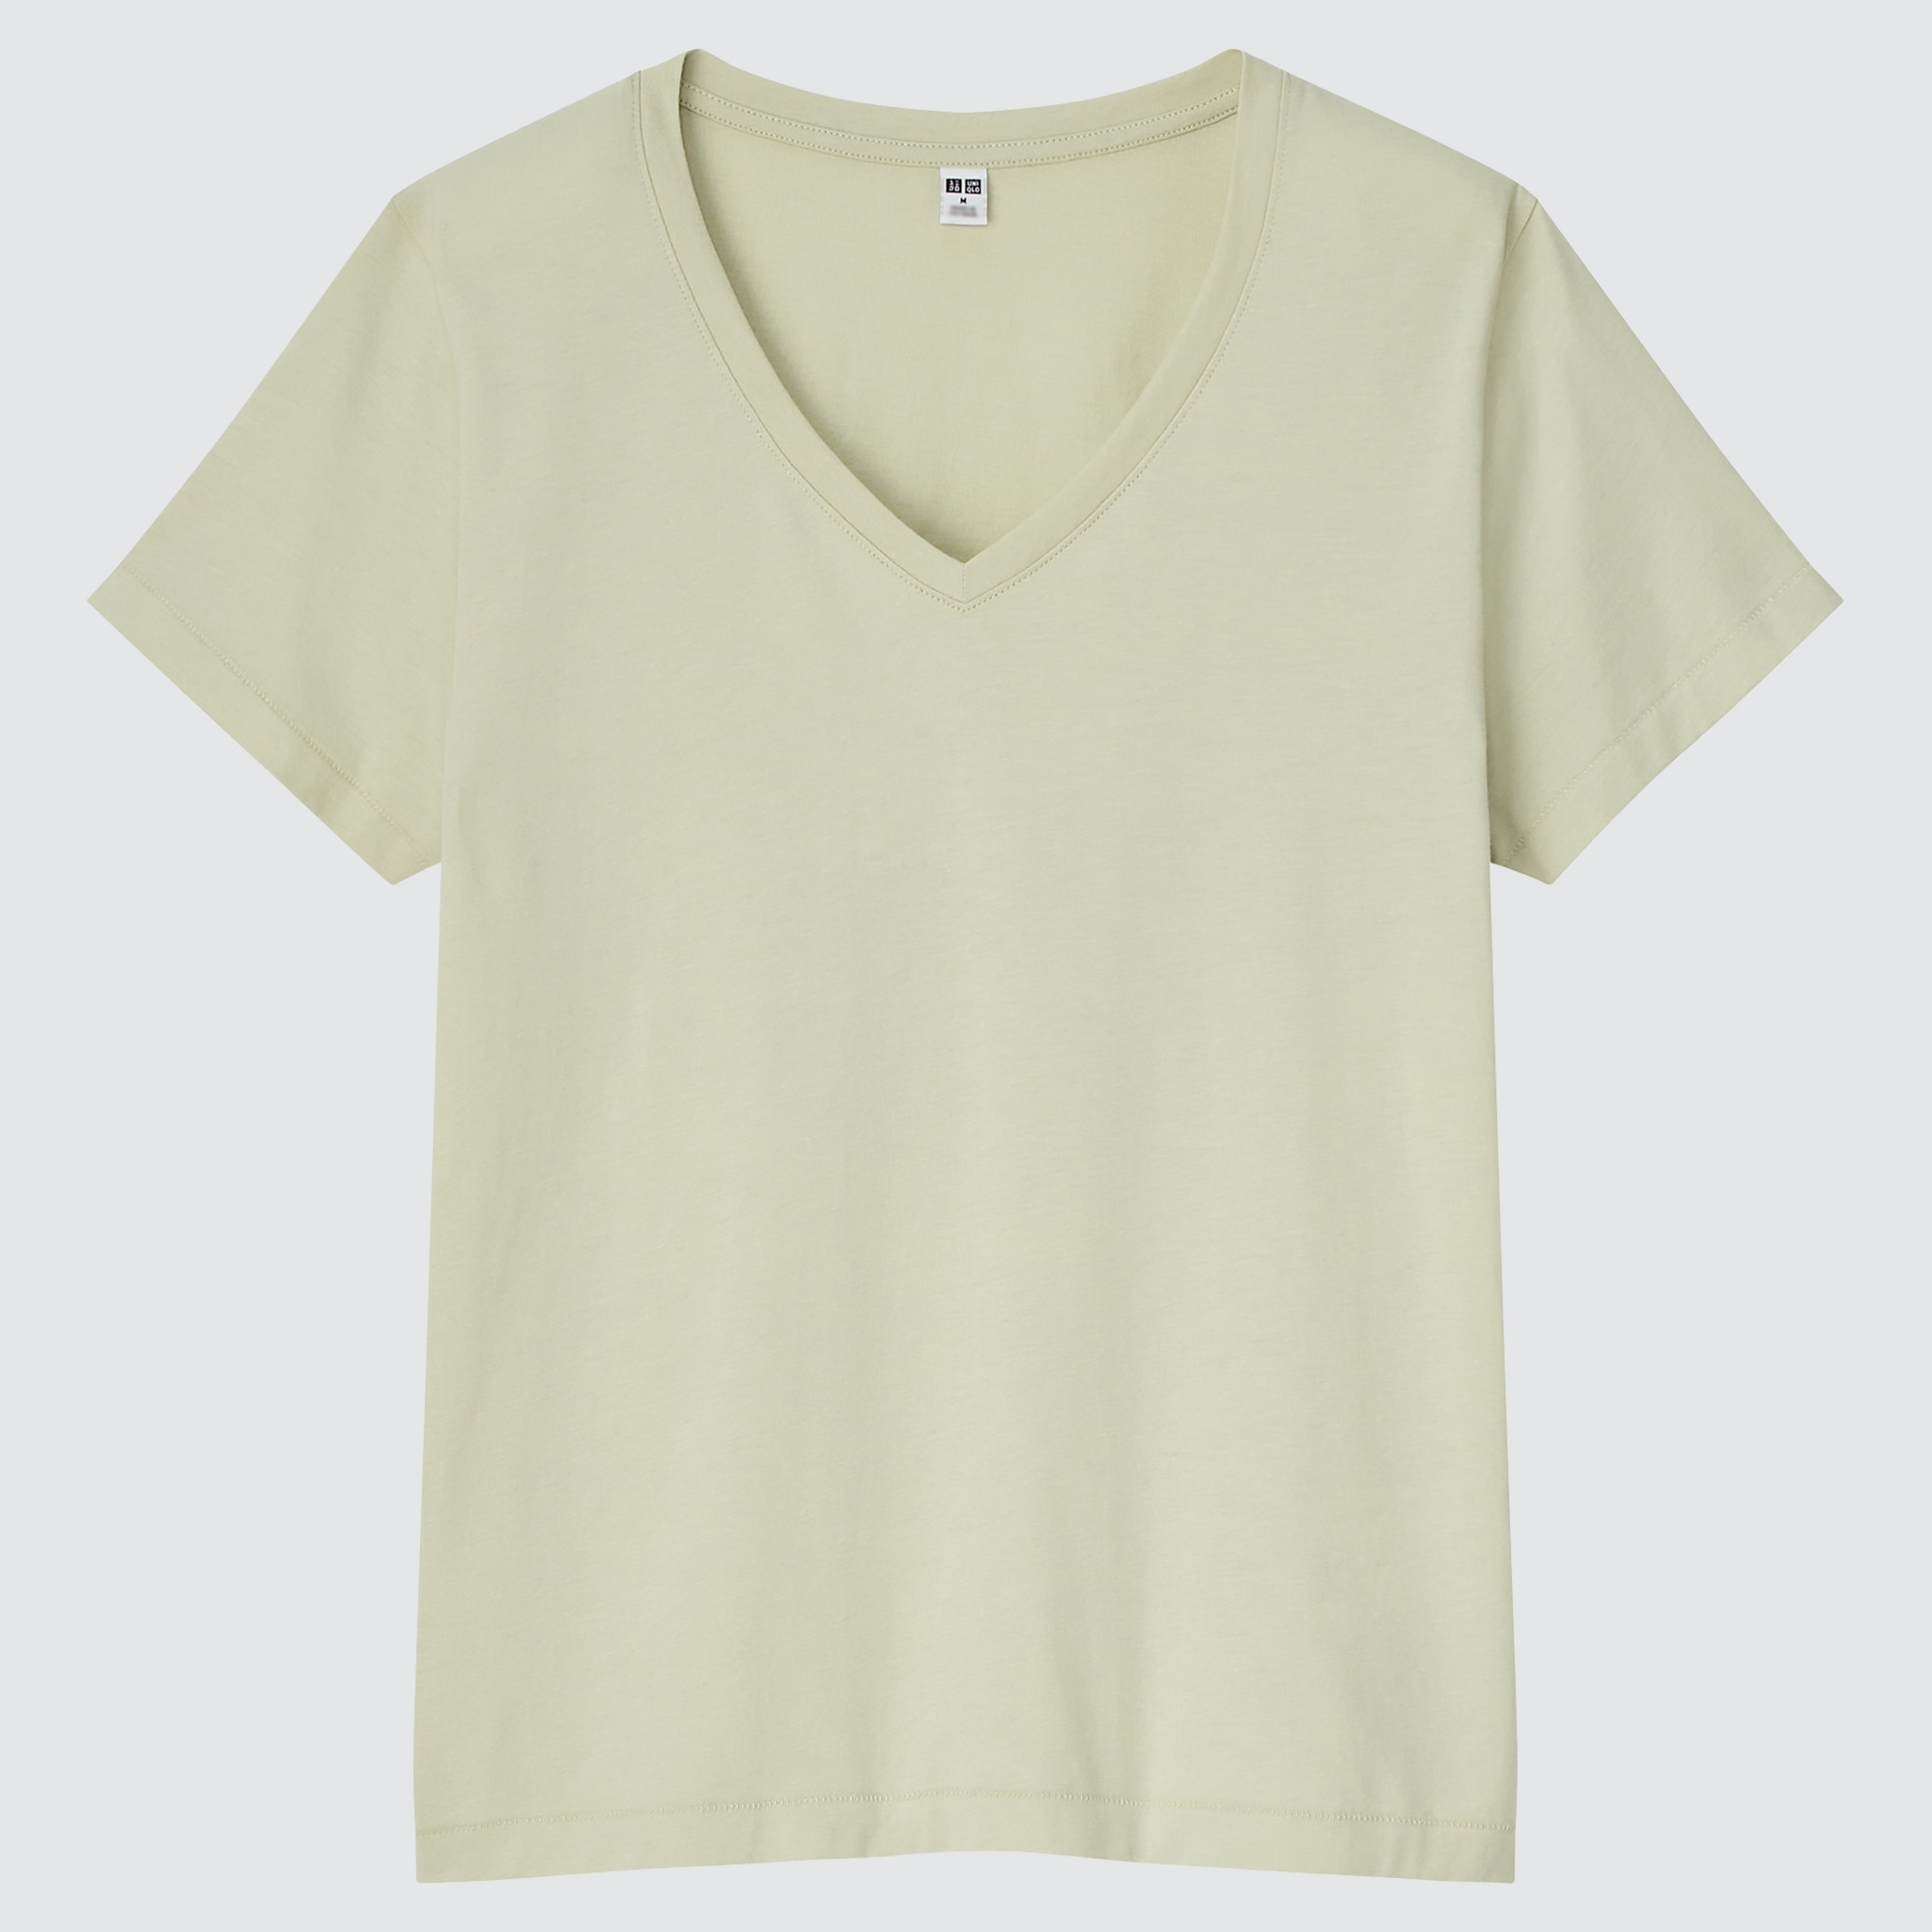 Chia sẻ với hơn 82 về uniqlo cotton t shirt mới nhất  cdgdbentreeduvn